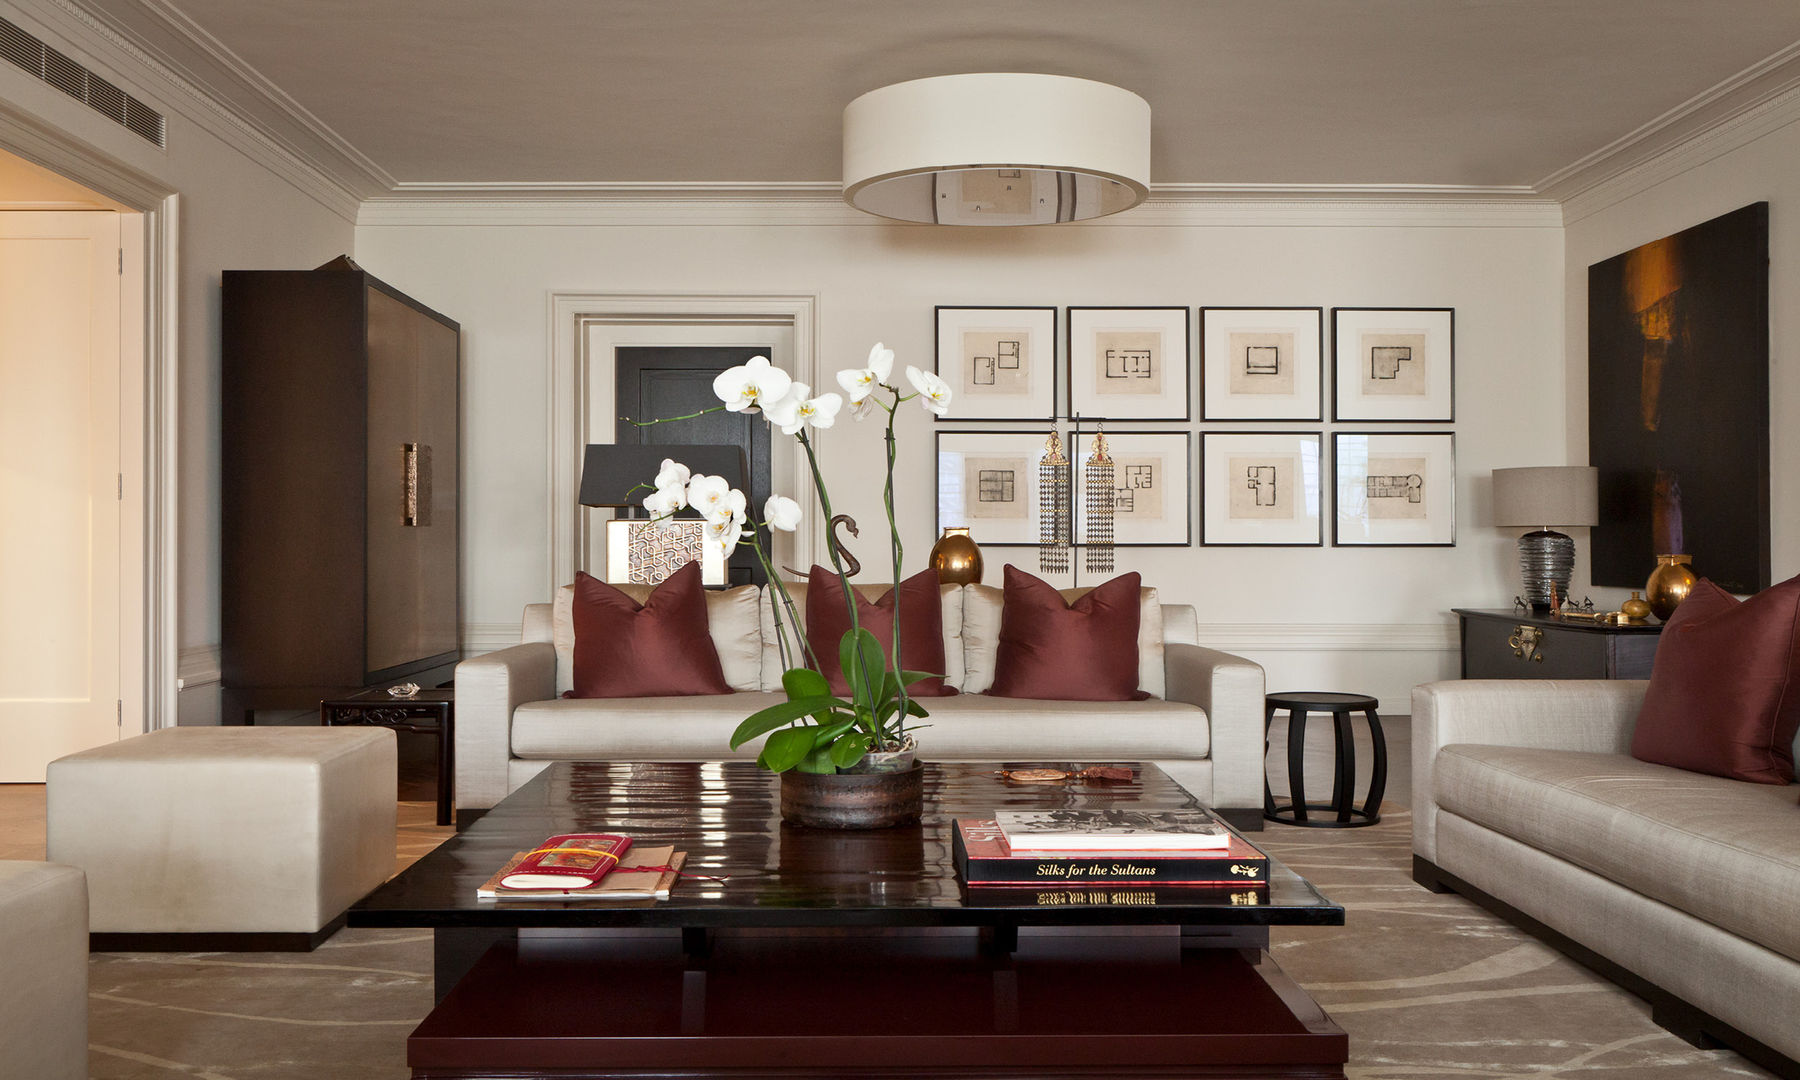 Modern Living room with an Asian Touch Rosangela Photography غرفة المعيشة